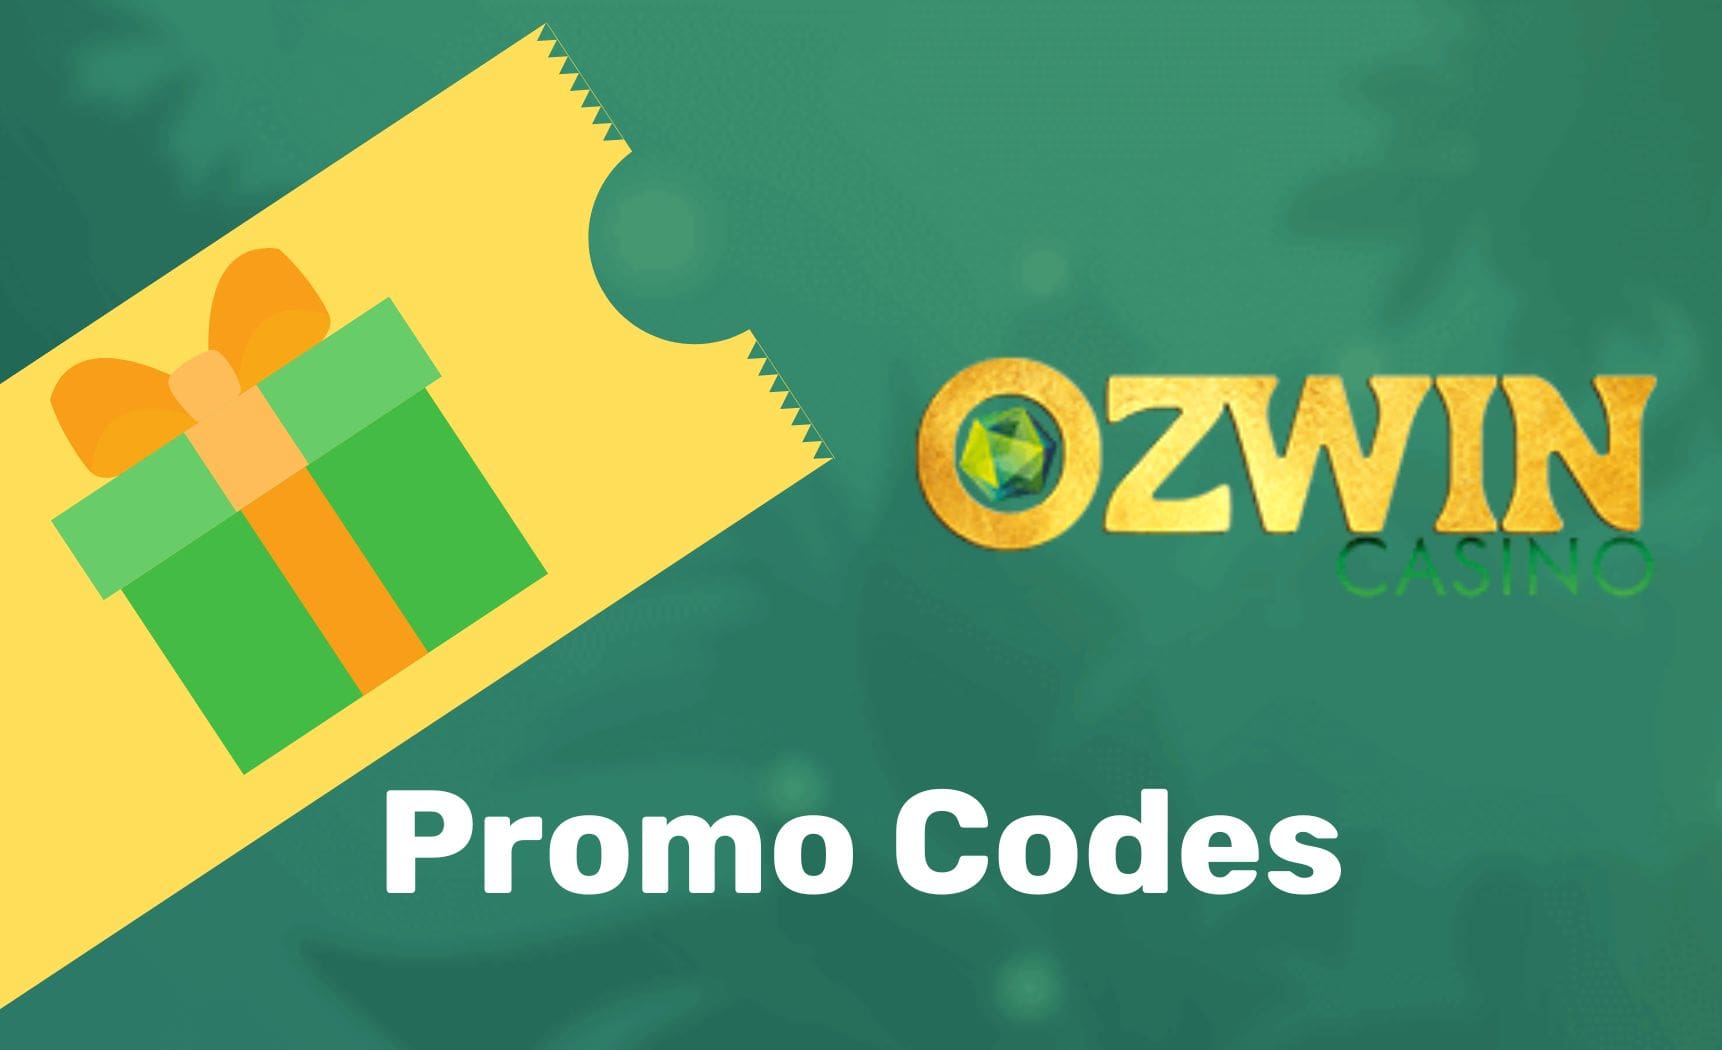 Ozwin Casino Promo Codes review